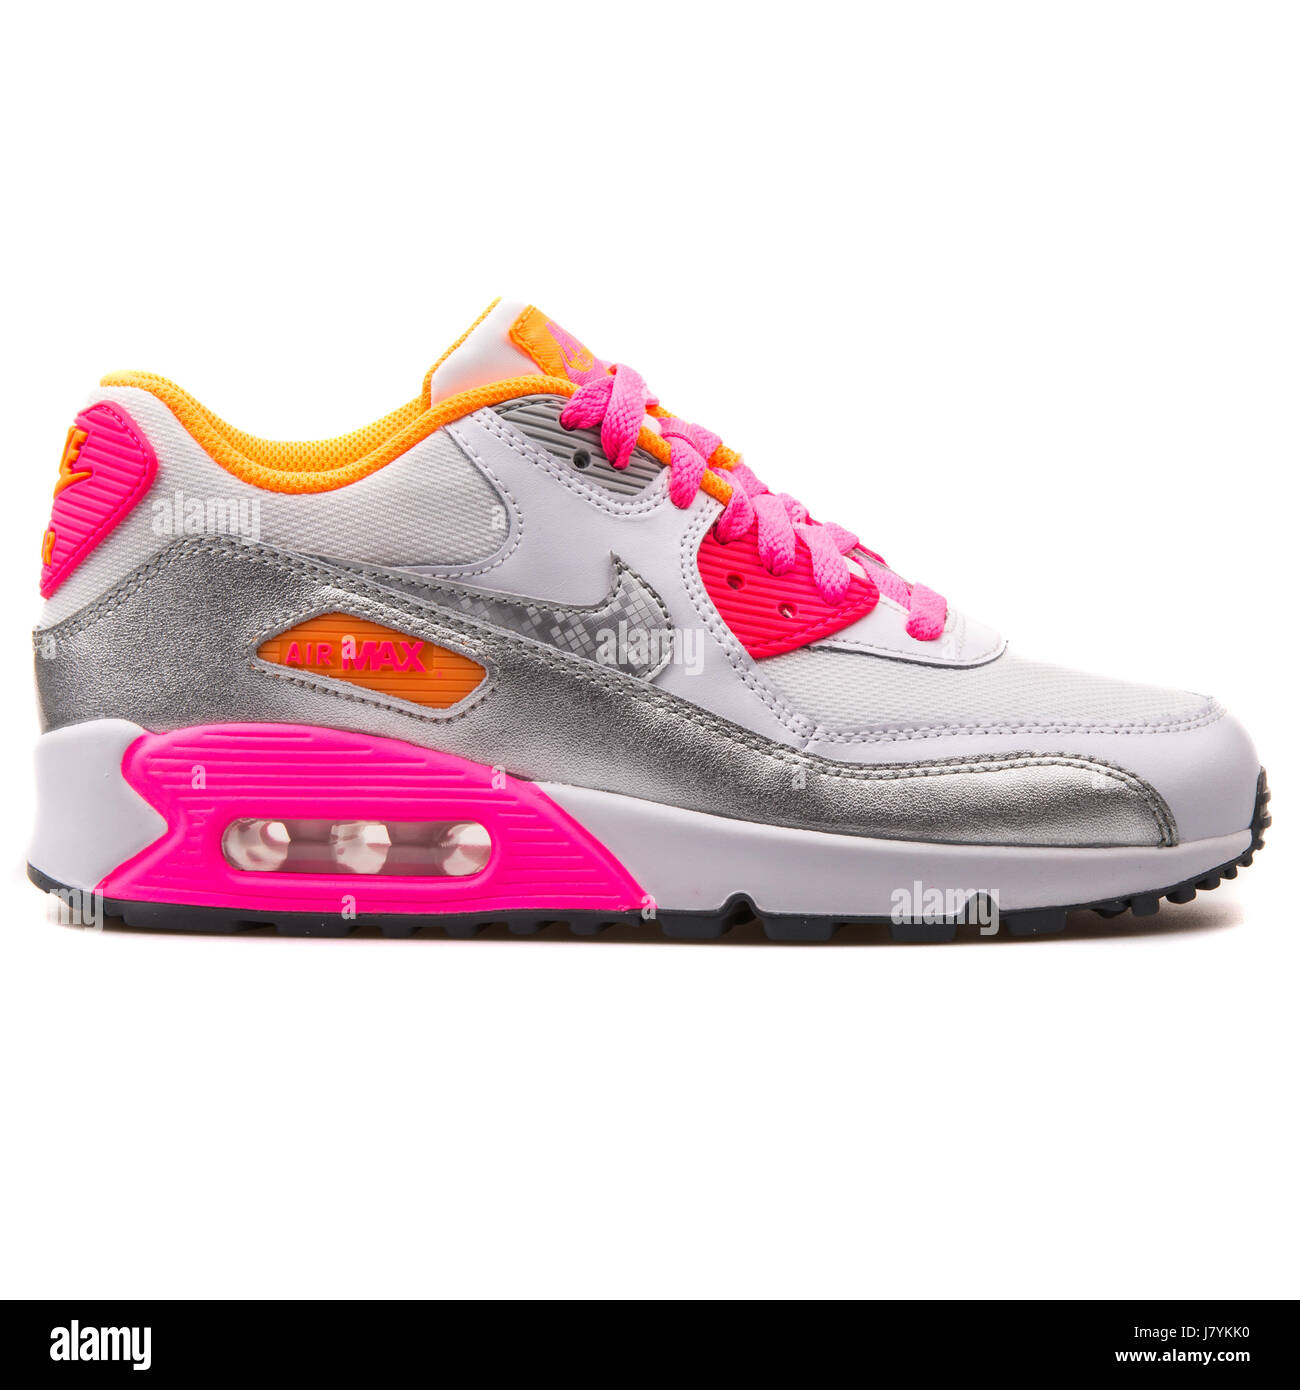 Nike Air Max 90 Malla (GS) Juventud blanco, plata y rosa ejecutando  Sneakers - 724855-101 Fotografía de stock - Alamy